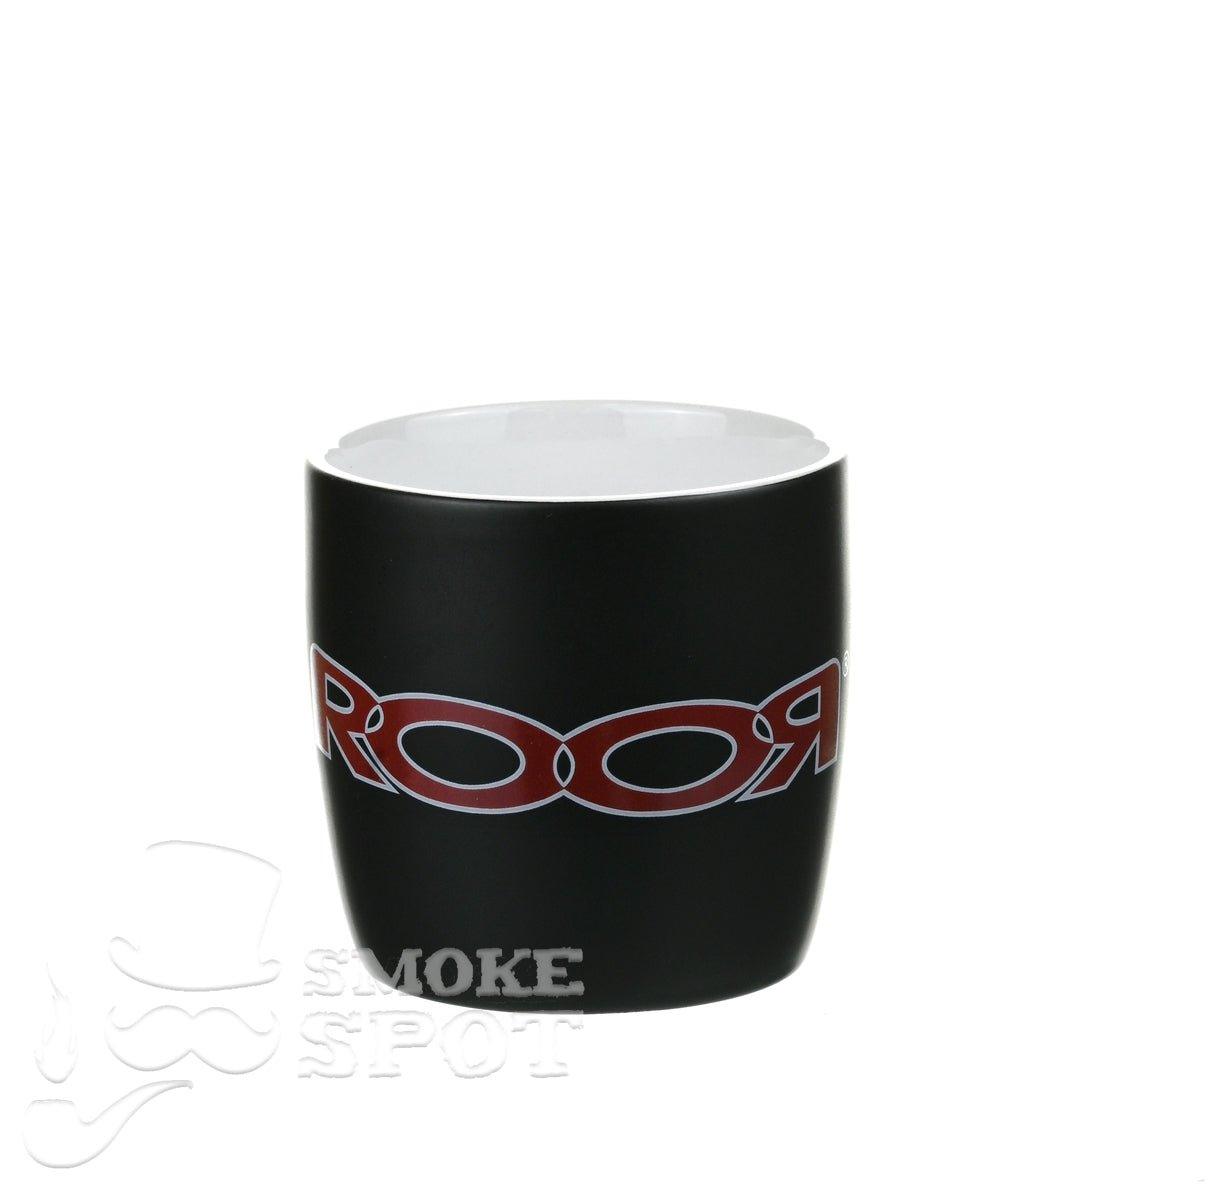 ROOR mug red white white inside - Smoke Spot Smoke Shop